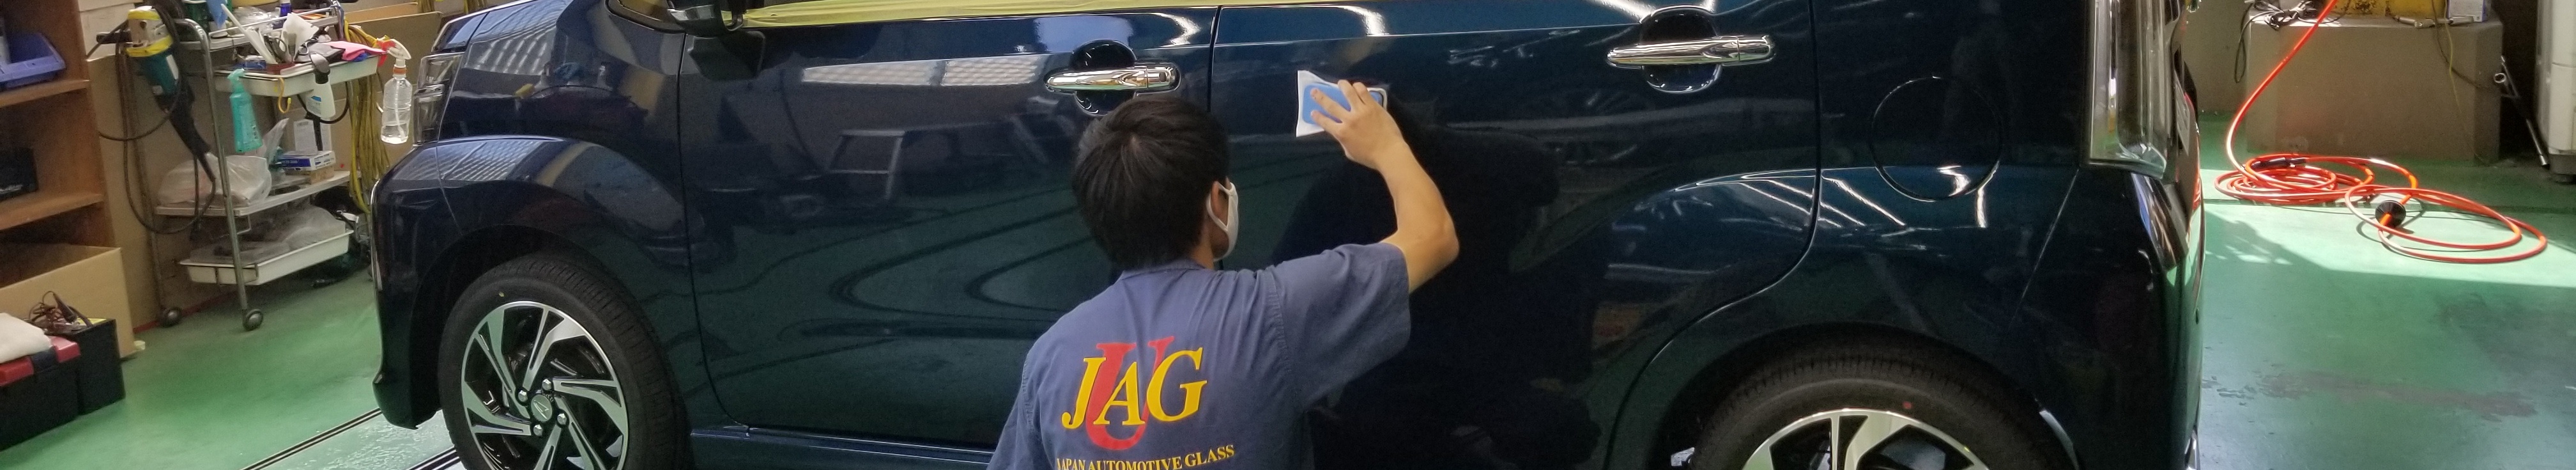 愛知県での自動車ガラス交換の詳細について